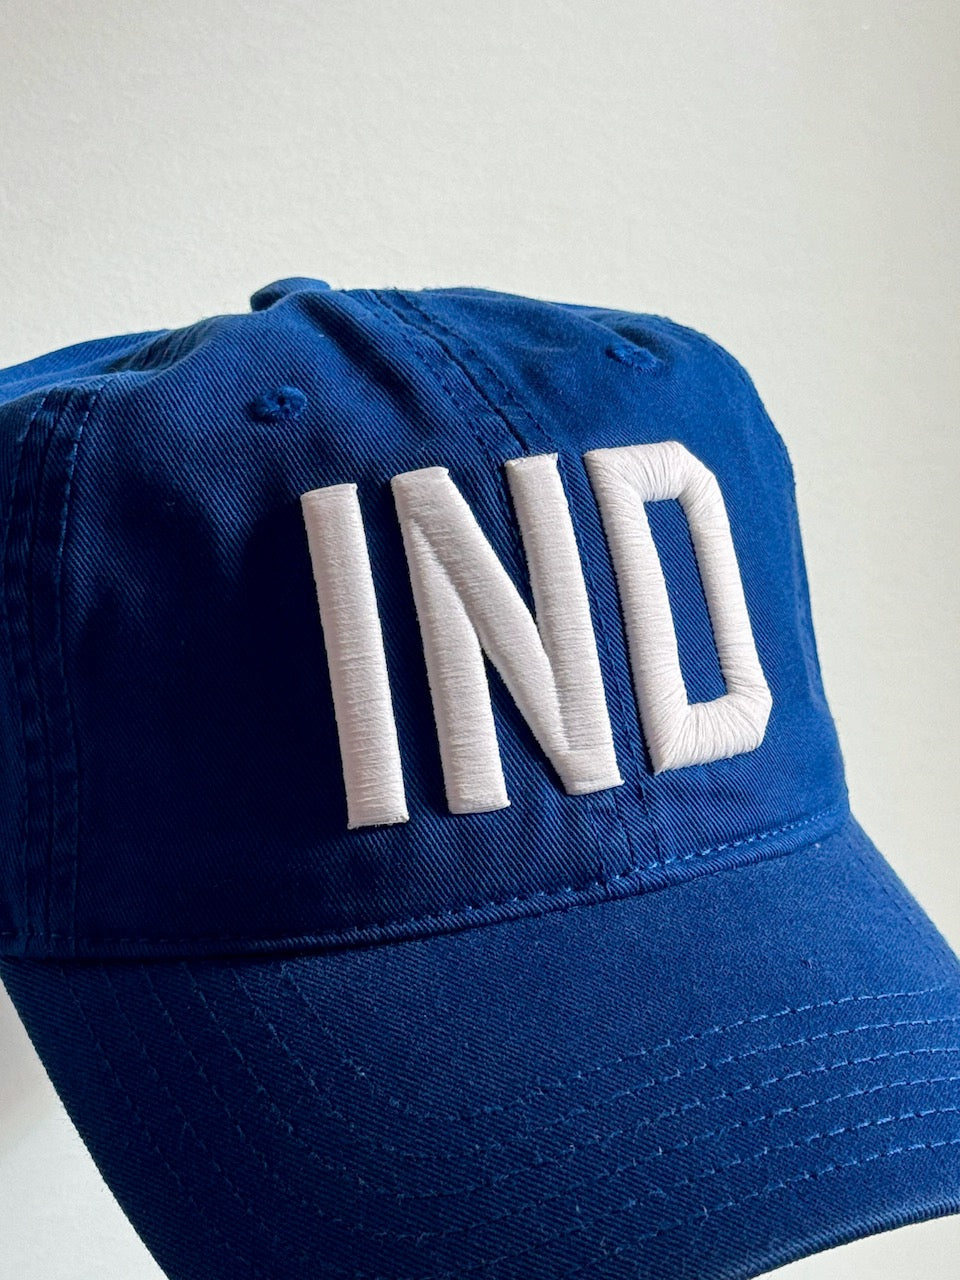 IND Hat - Blue w/ White